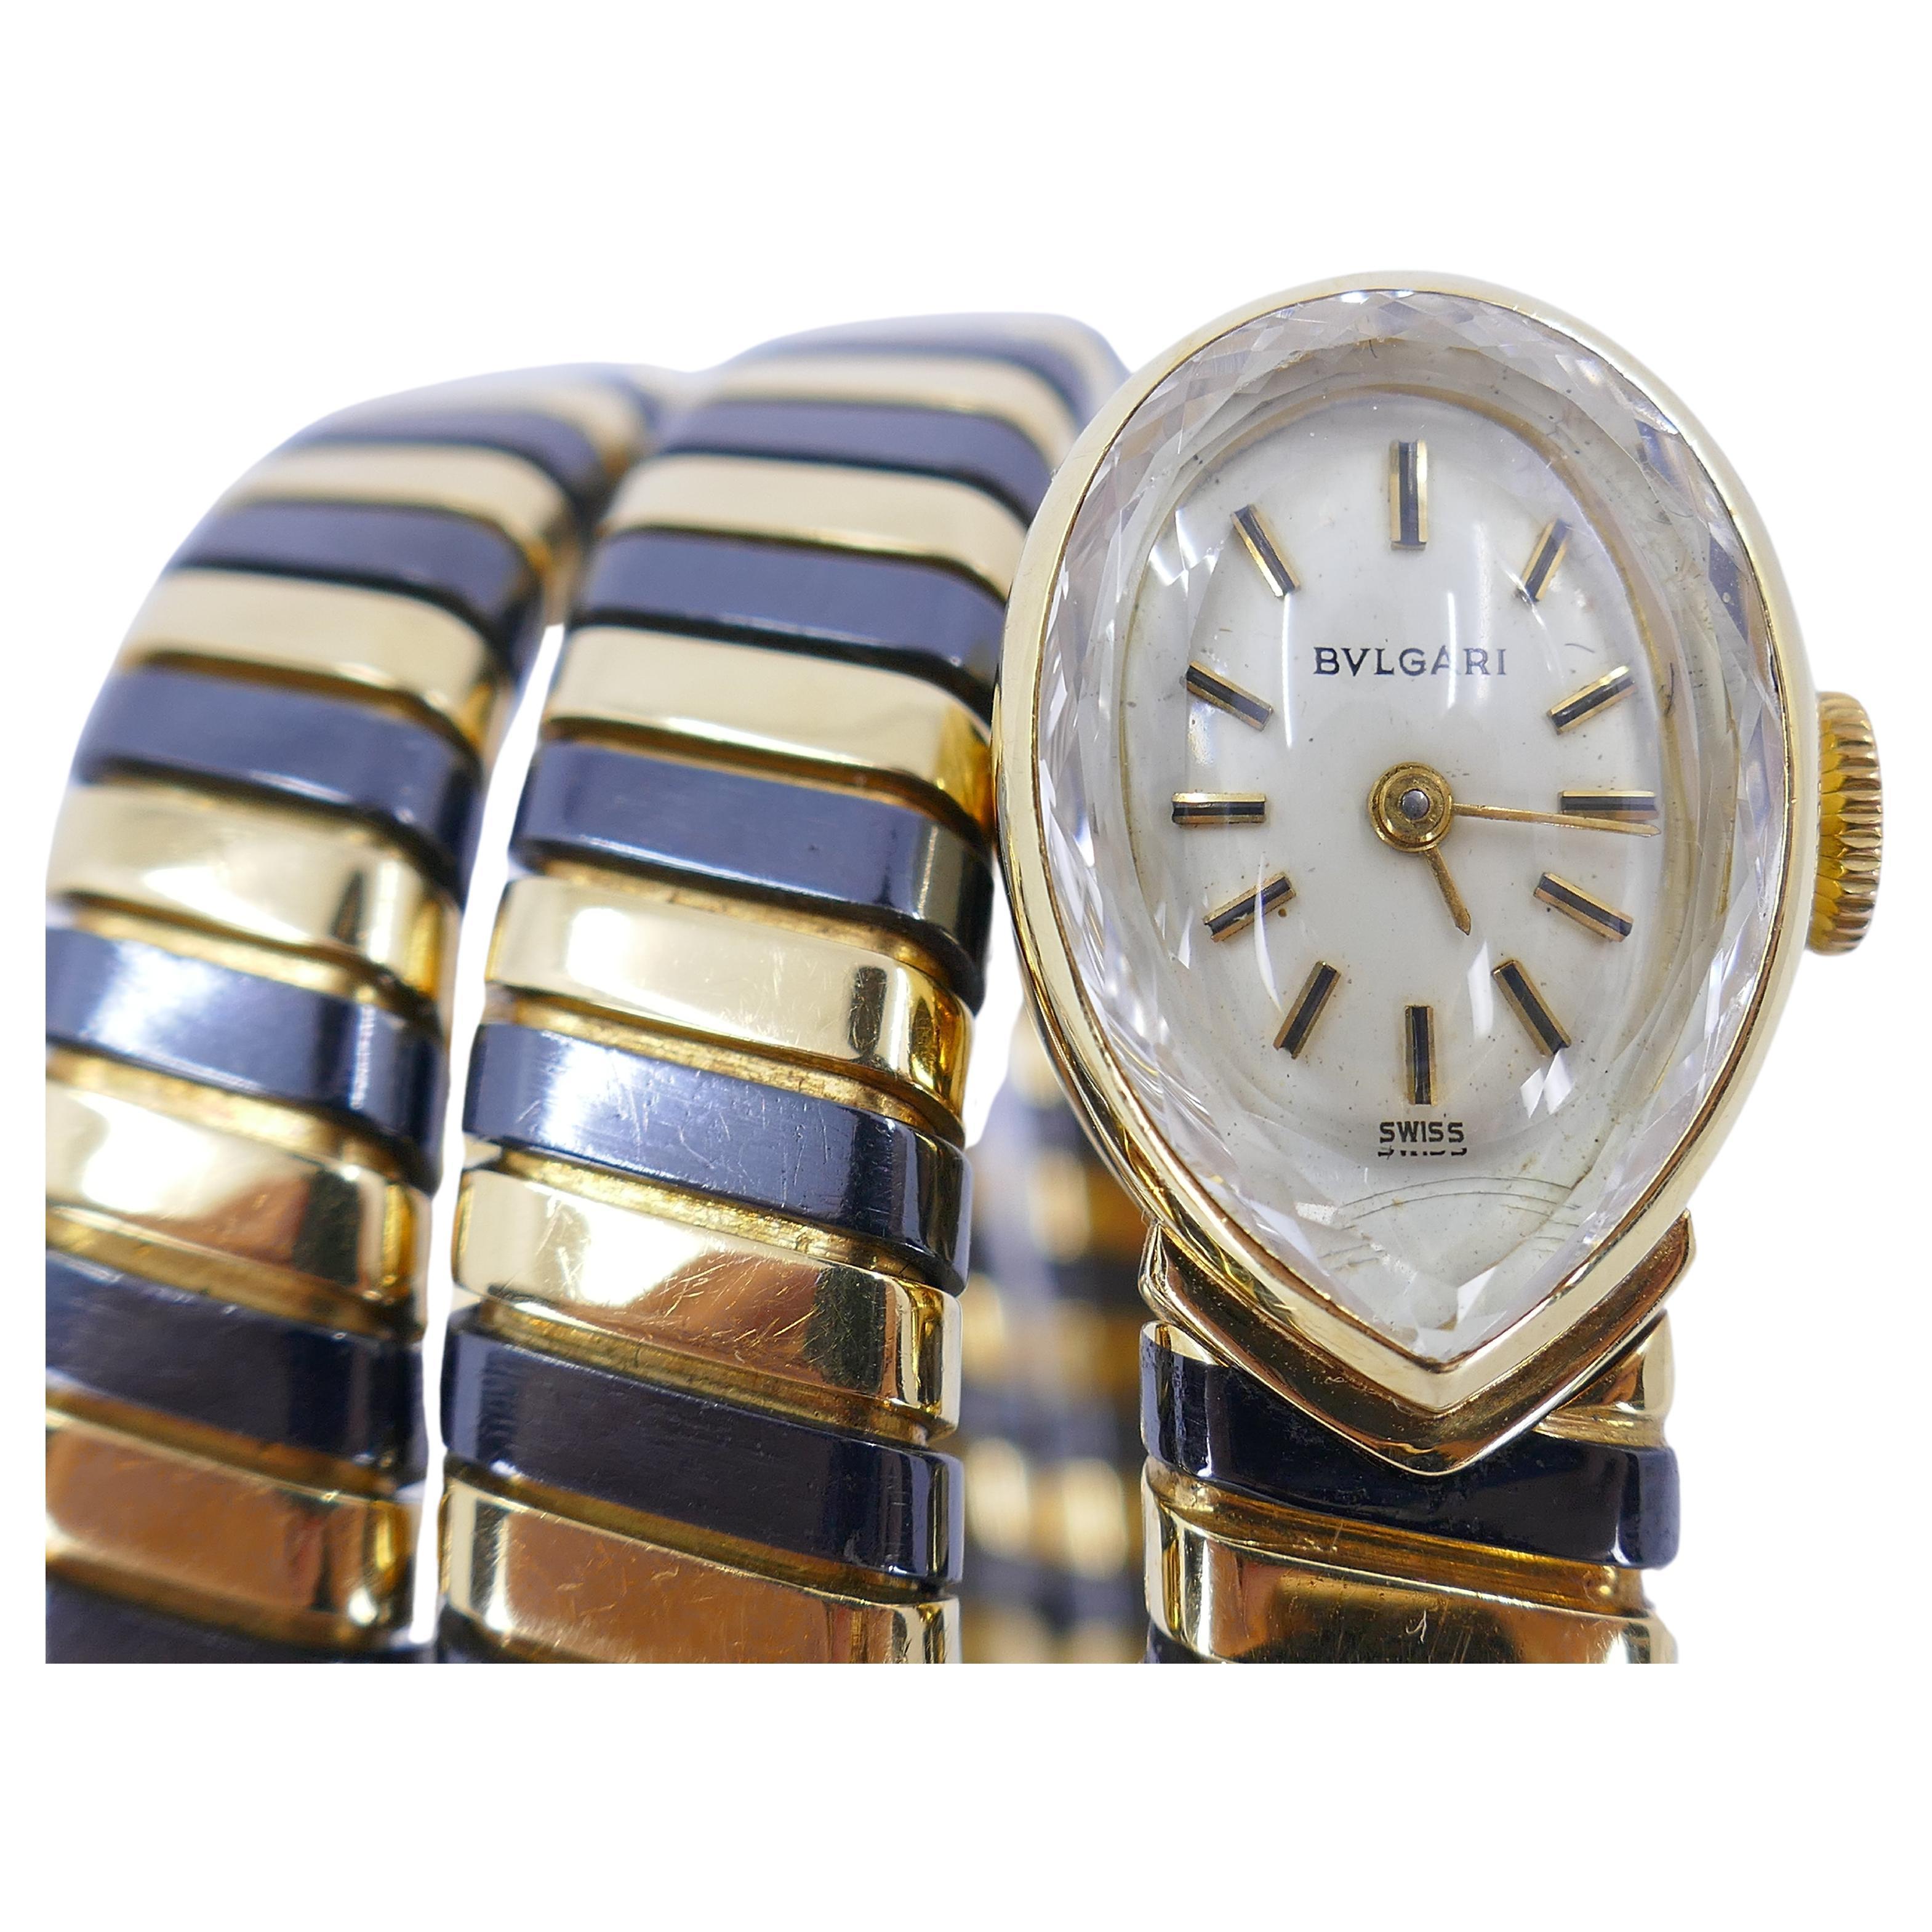 Eine seltene Version der kultigen Bulgari Tubogas-Uhr aus dem  abwechselnd geschwärztes und gelbes 18-karätiges Gold. Das Gehäuse ist birnenförmig, mit weißem Zifferblatt, goldenen Stabindexen und schwarzer Emaille verziert. 
Die Uhr ist elegant,